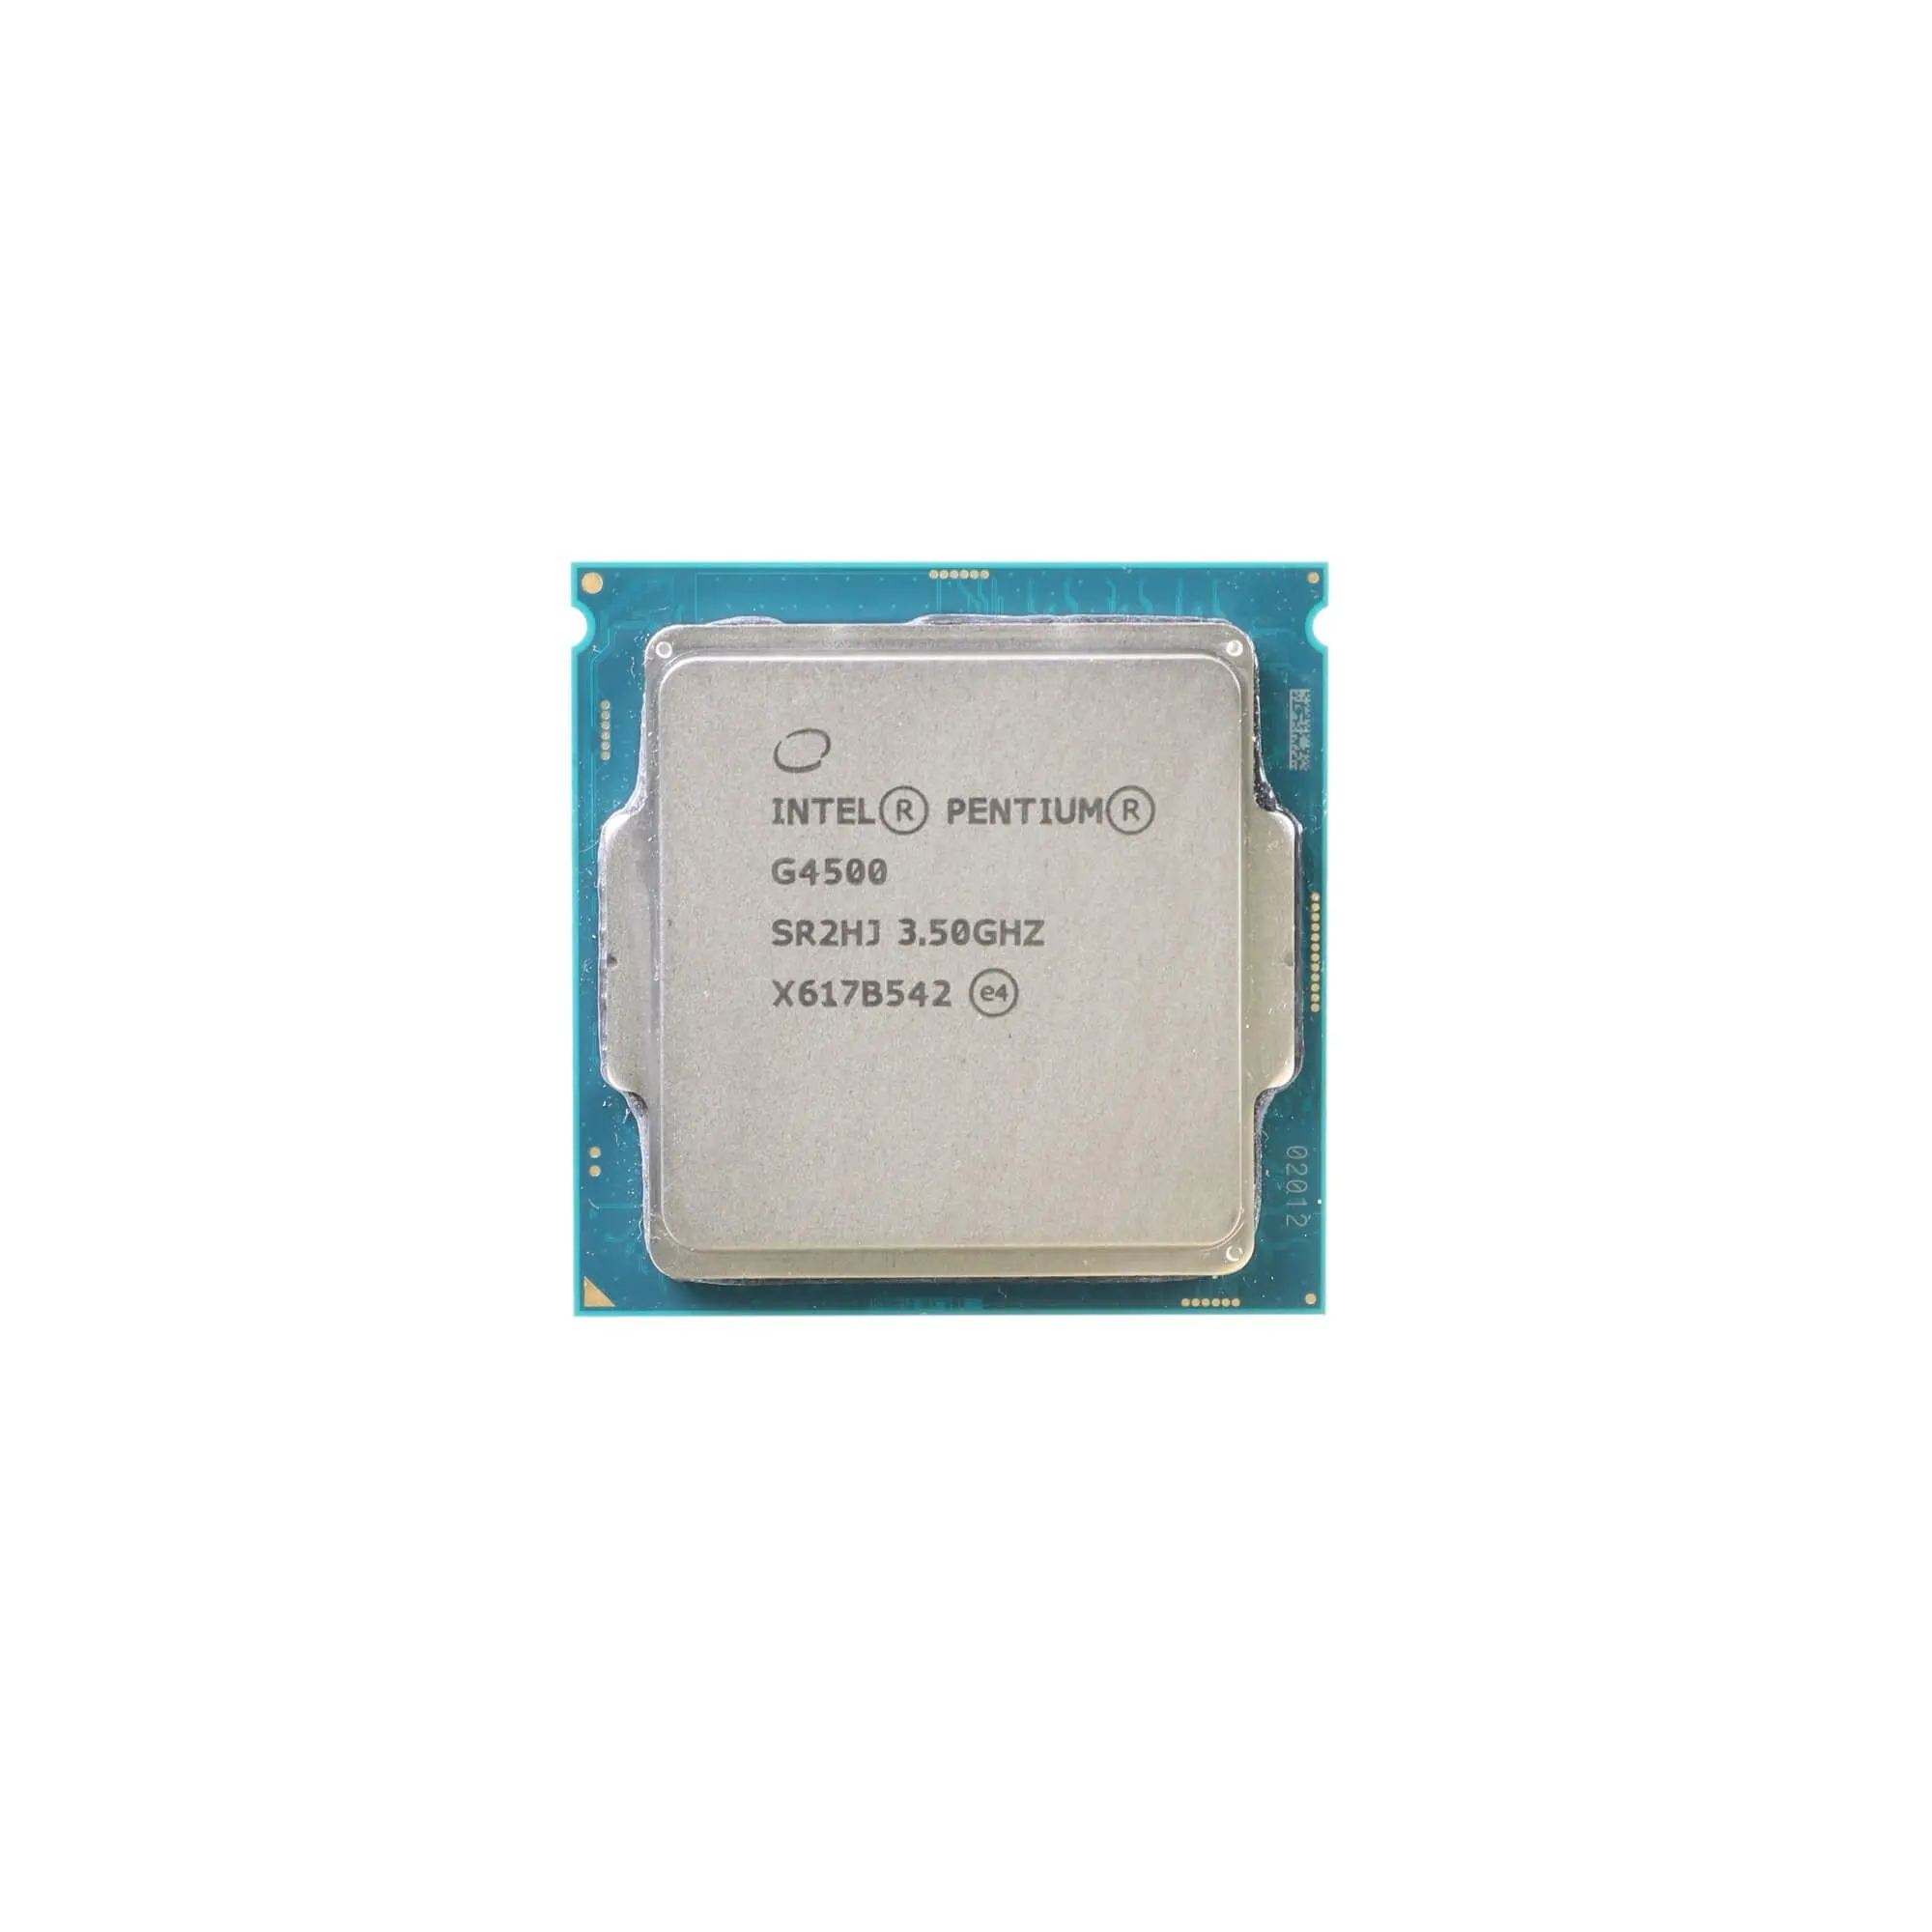 إنتل بنتيوم G4500 معالج وحدة المعالجة المركزية 2 الأساسية 3.50GHz 3MB L3 ذاكرة التخزين المؤقت 51W SR2HJ